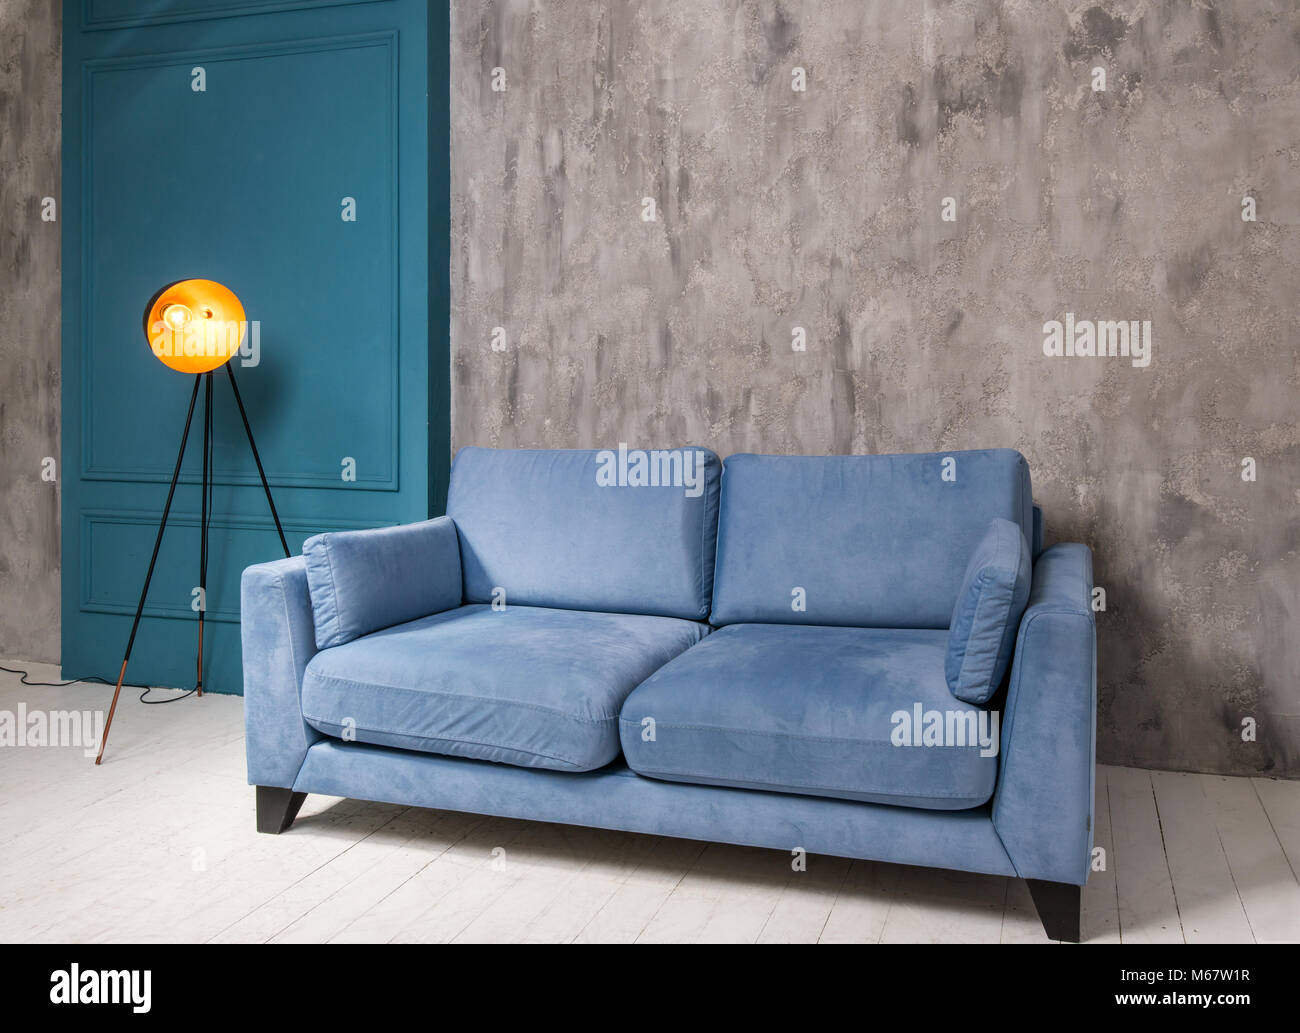 Salón interior con sofá azul y lámparas retro Foto de stock